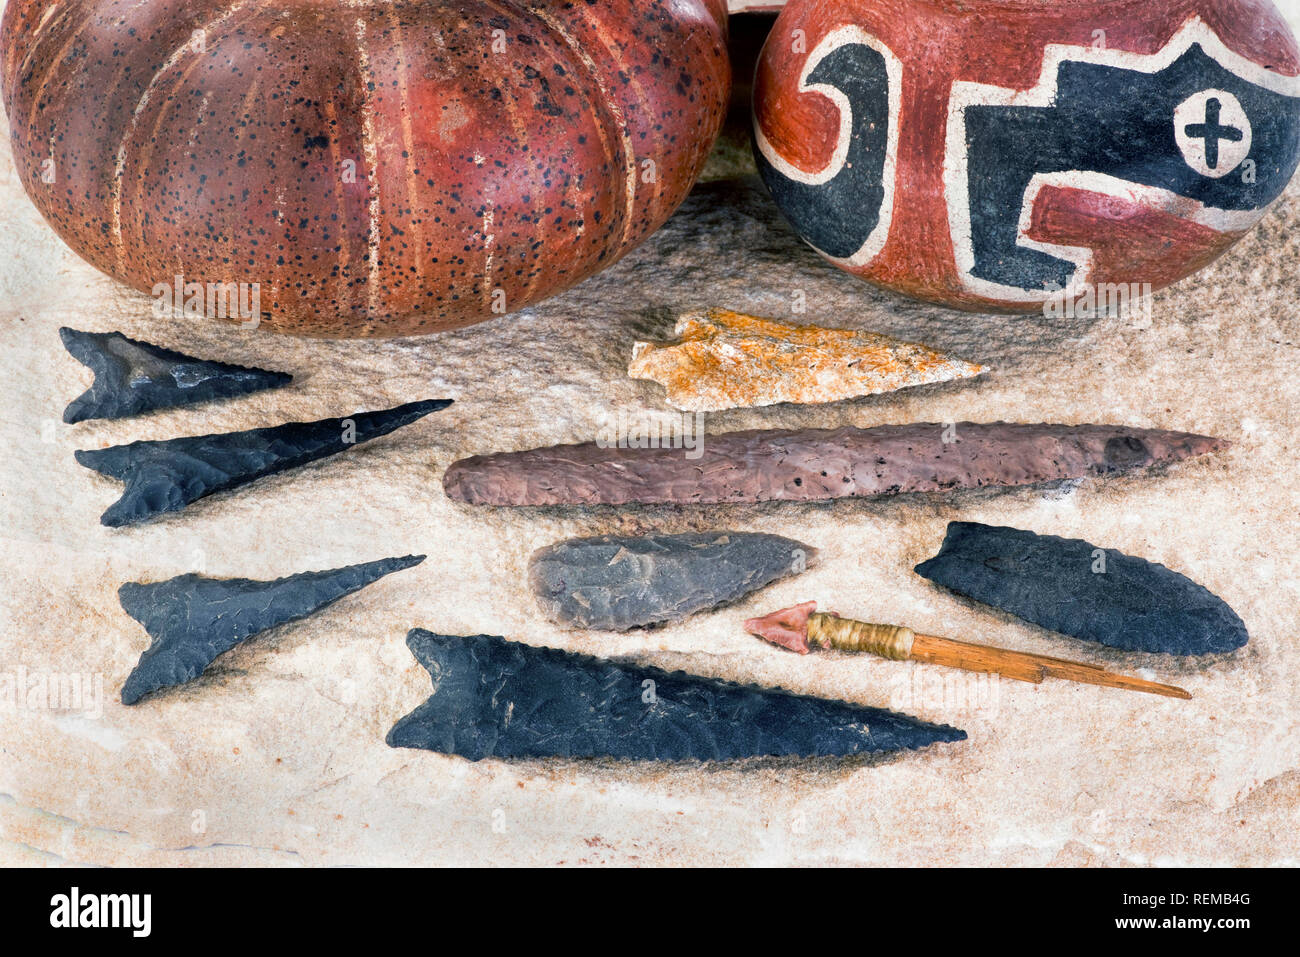 Real American frecce trovato in Texas e Arkansas realizzato intorno a 6-9 di migliaia di anni fa. Foto Stock